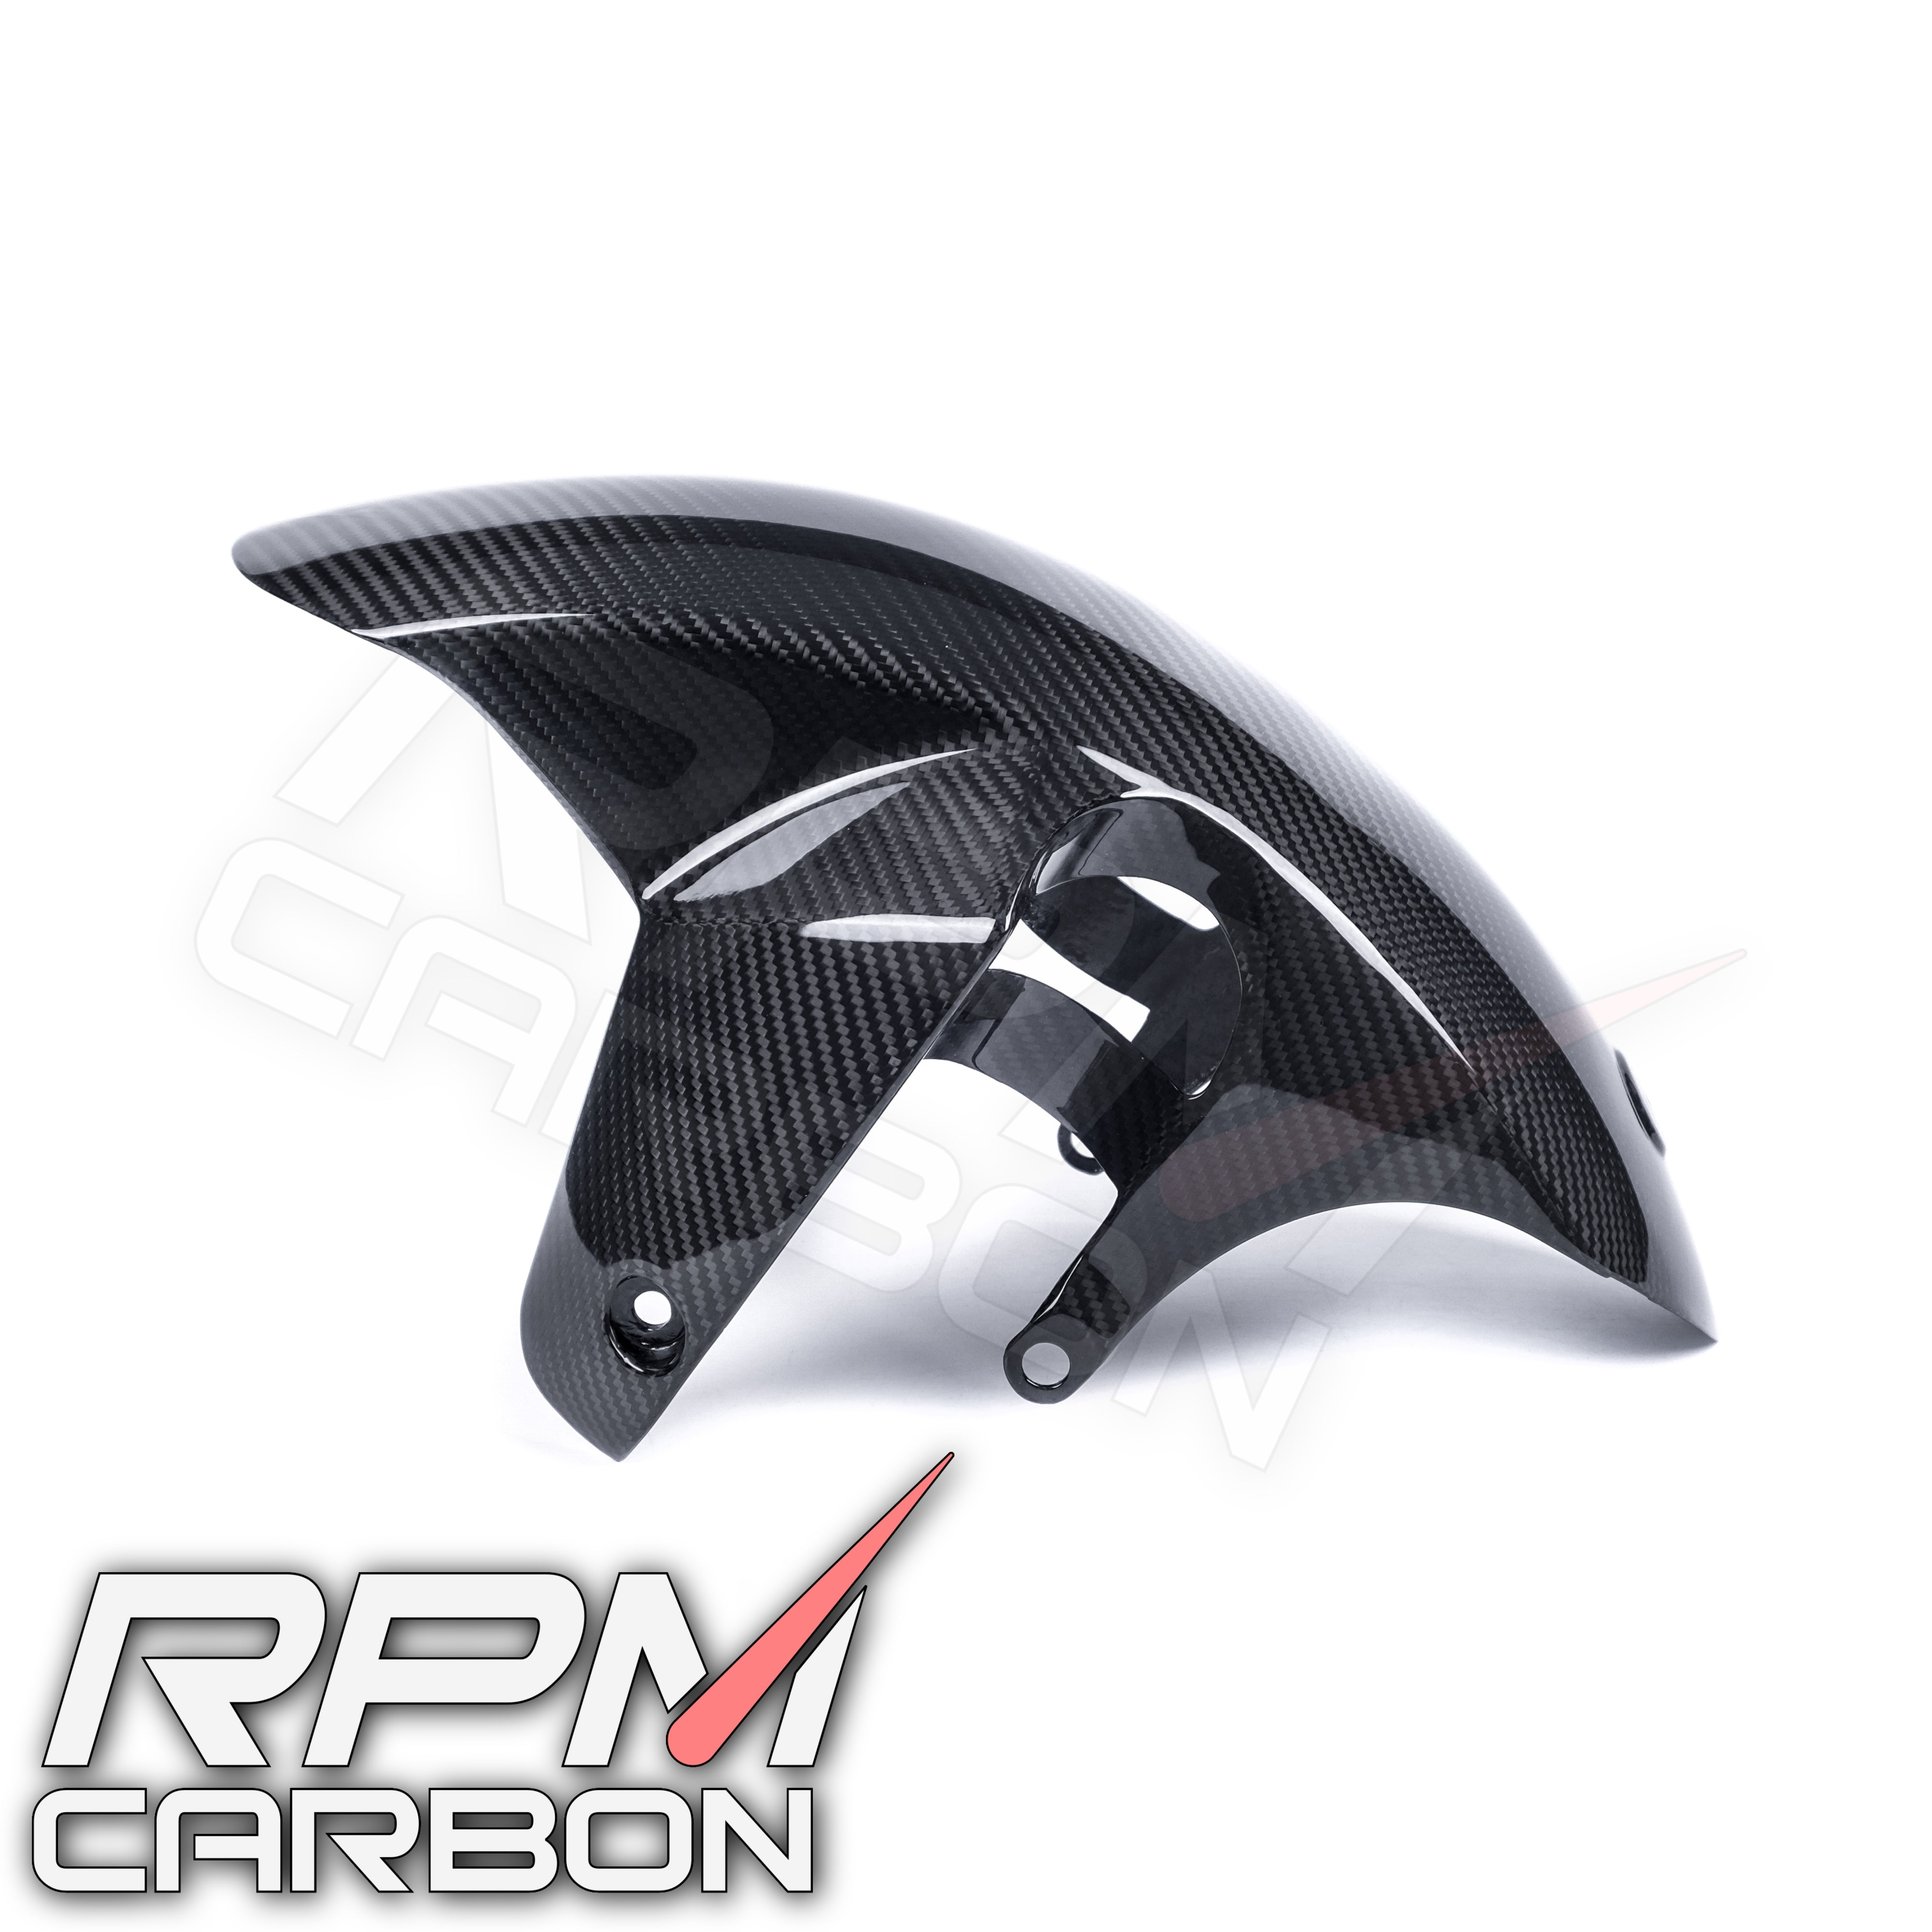 【RPM CARBON】บังโคลนหน้า GSX-R1000 (Gixxer ,GSXR) - Webike Thailand  - th0674251 1